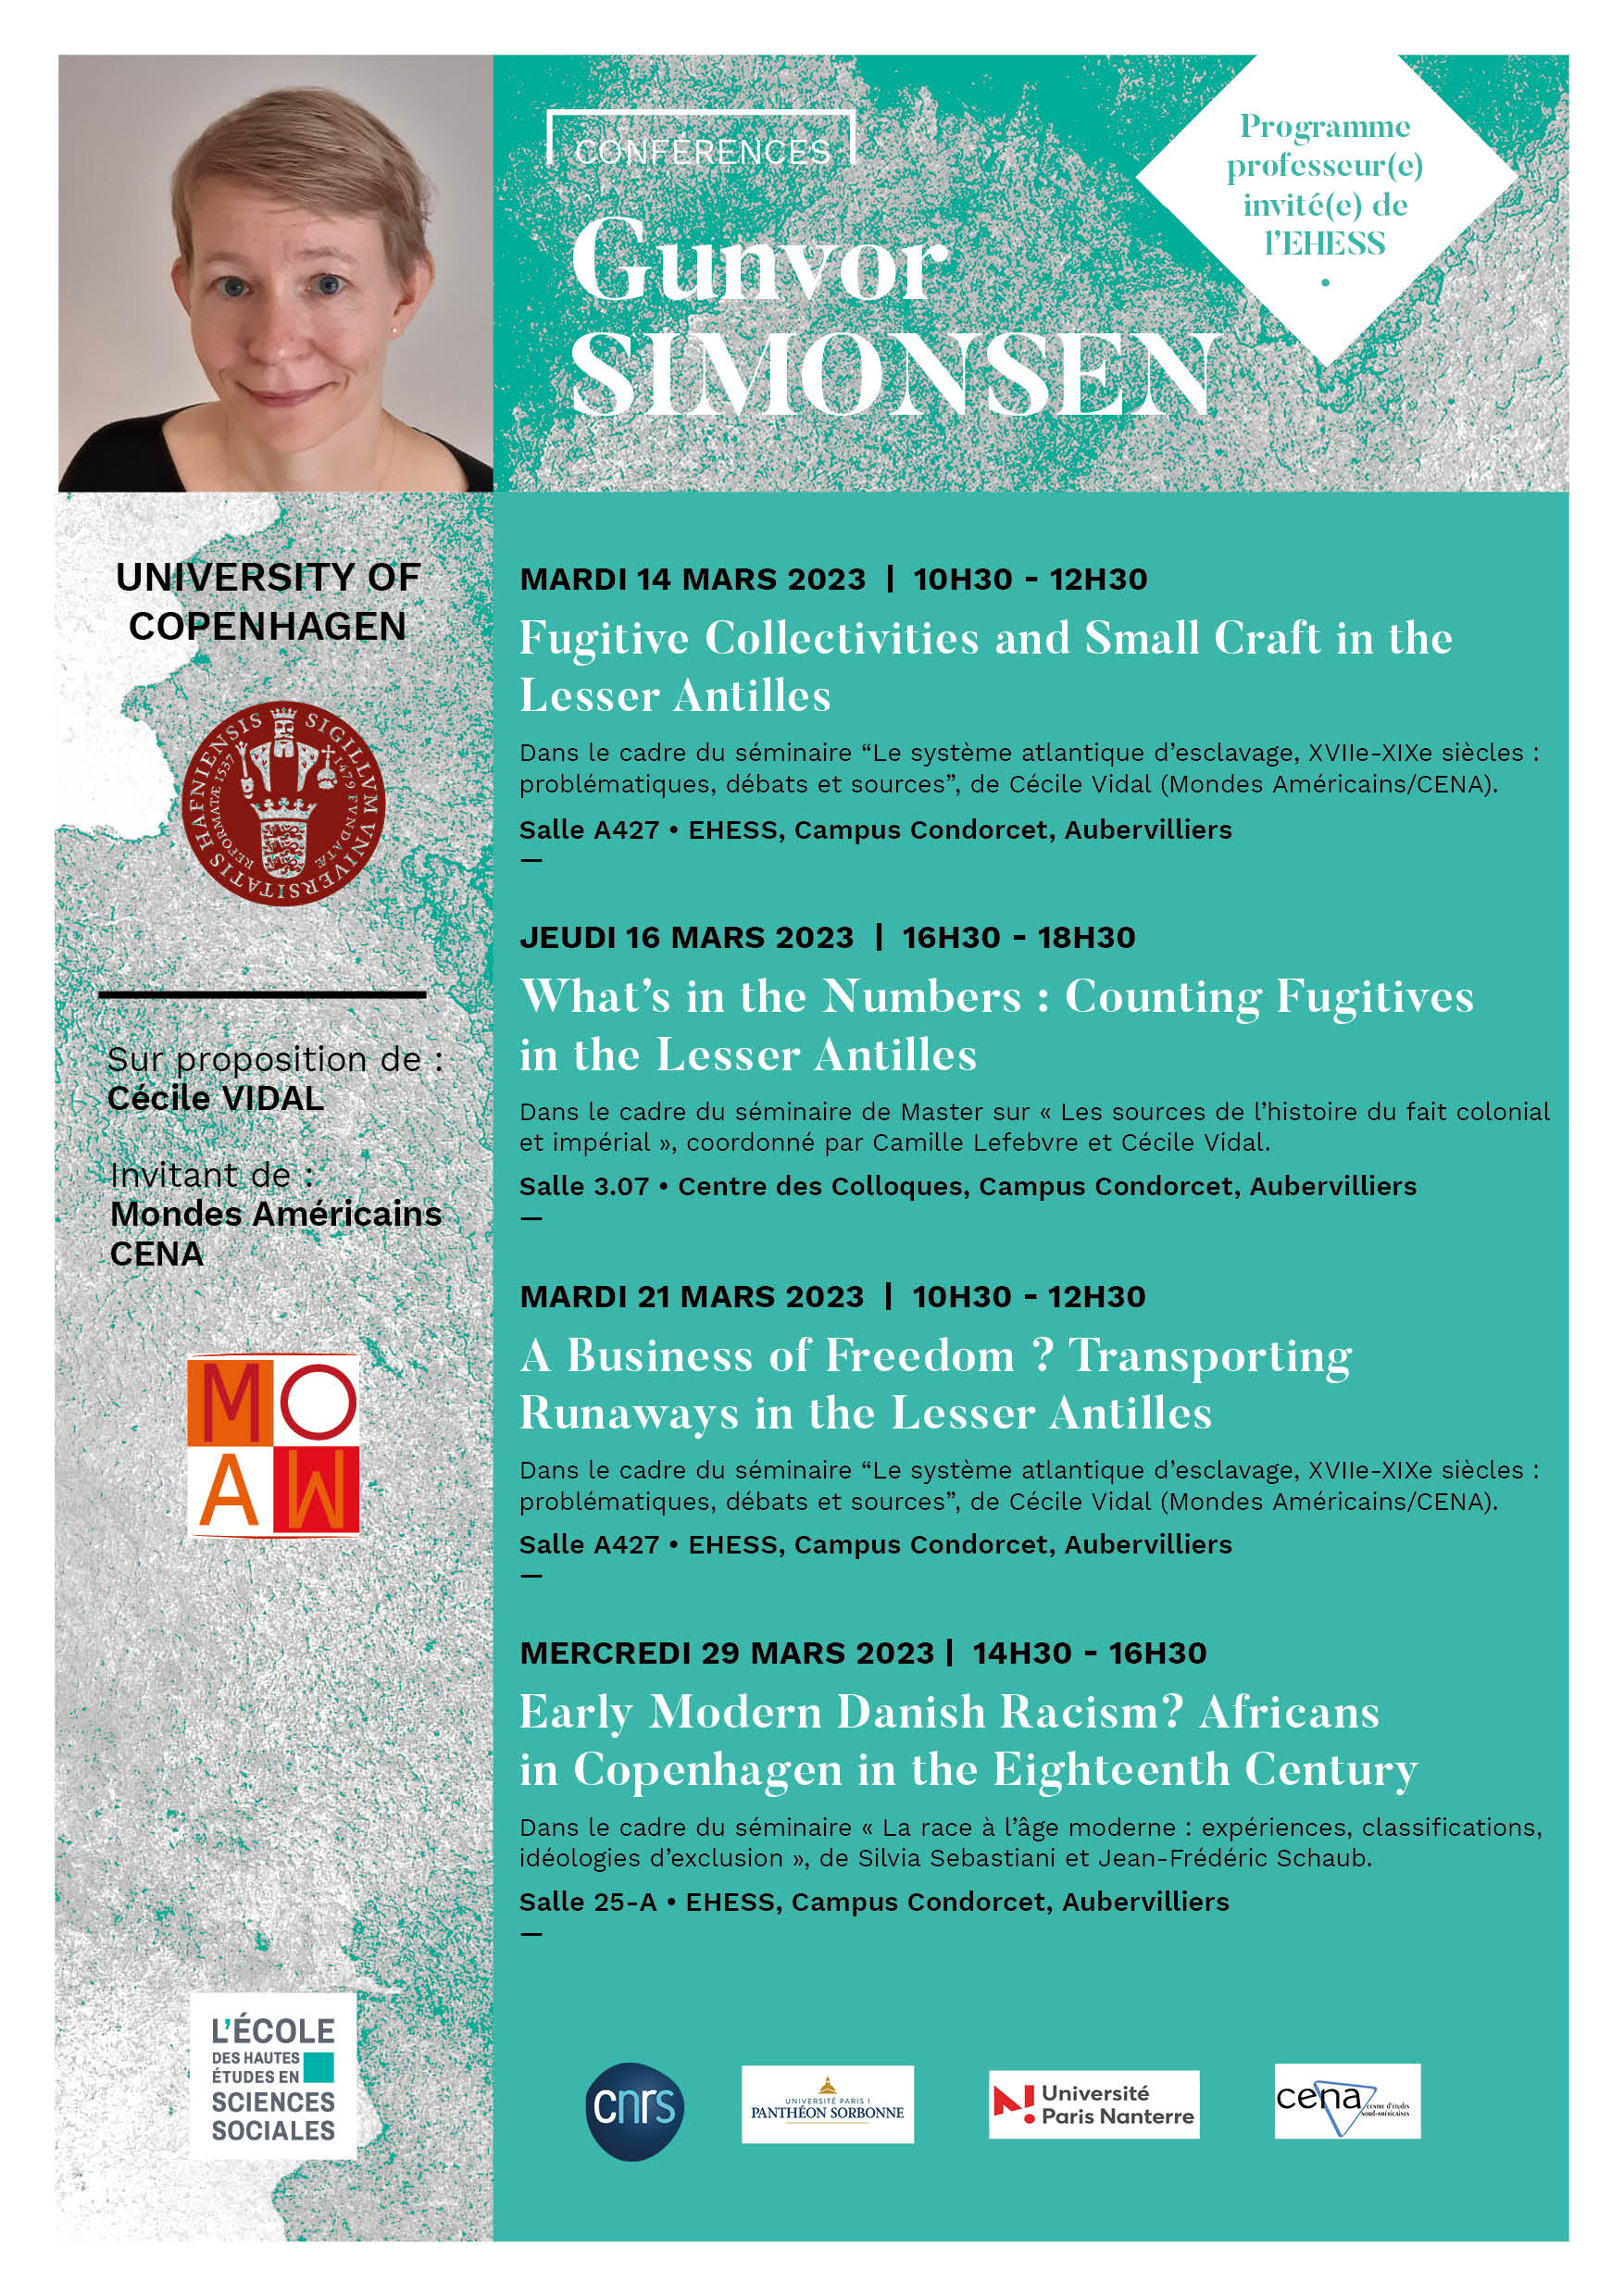 Conférences de Gunvor Simonsen, professeure à l’Université de Copenhague, Danemark